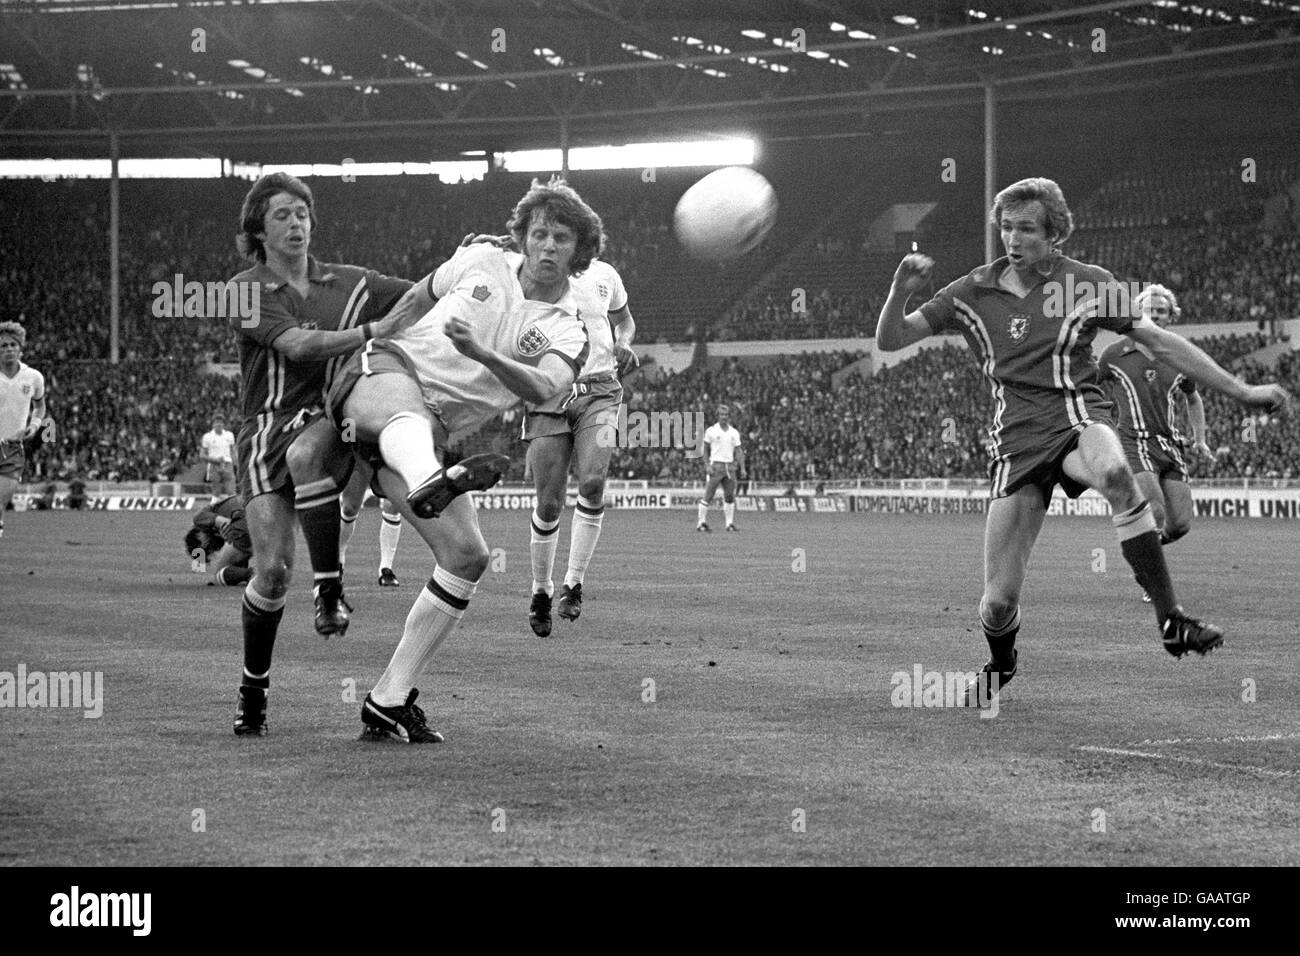 Fußball - England gegen Wales - Wembley. Brian Flynn aus Wales (links) zieht Mick Channon aus England, als er an Joey Jones aus Wales vorbeifährt (rechts). Stockfoto